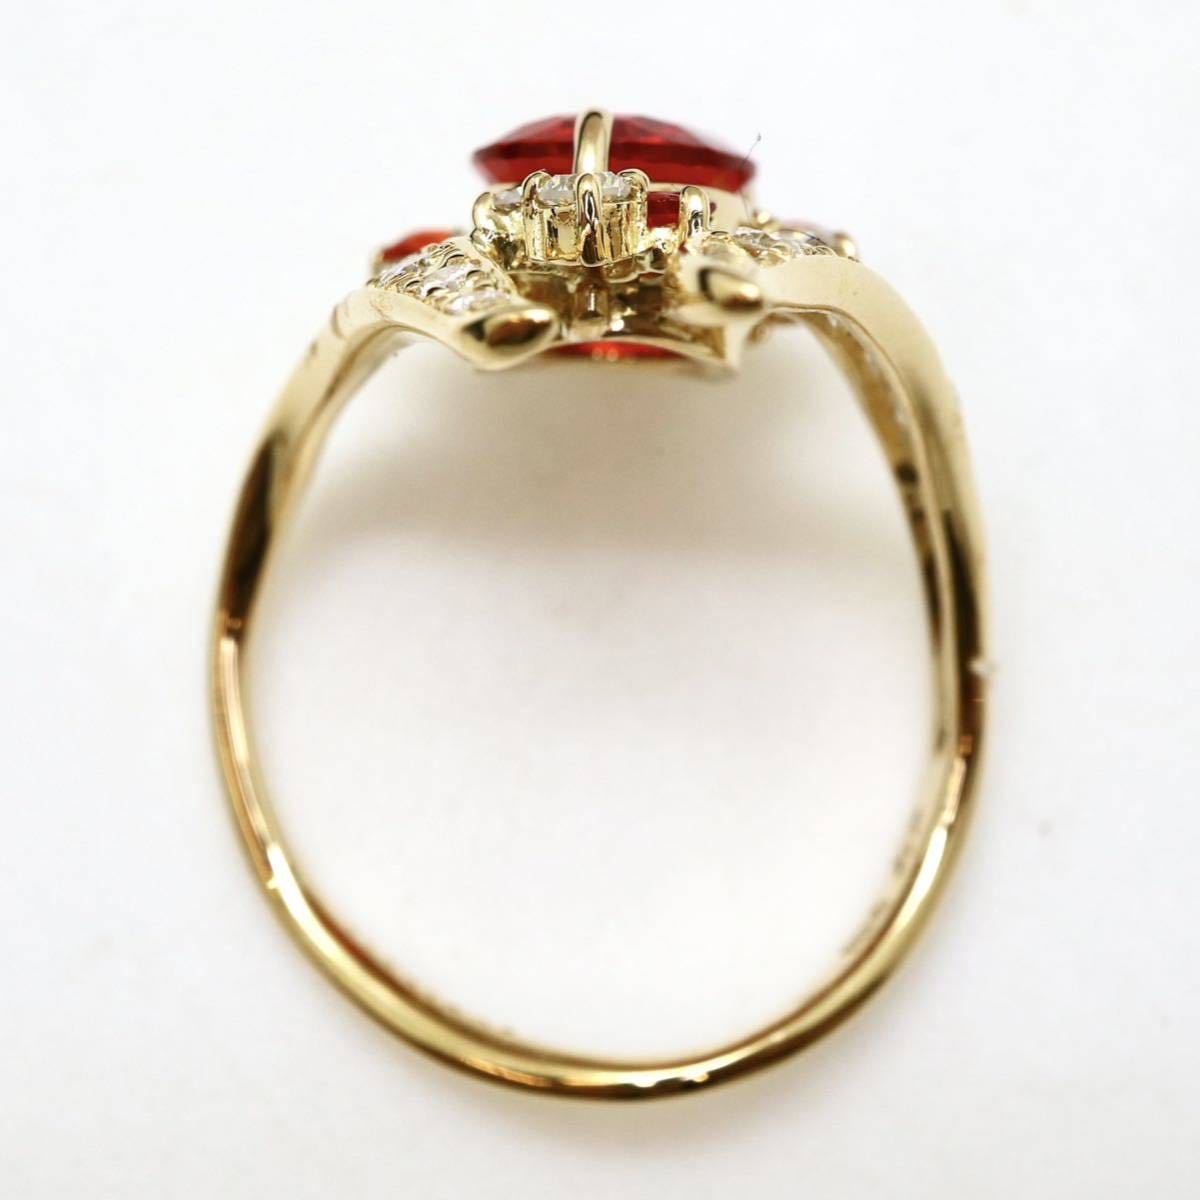 新品仕上げ済み!!豪華!!◆K18(750) 天然ダイヤモンド/天然オパールリング◆J 約5.0g 14号 opal ring 指輪 jewelry ジュエリー ring EC9/EC9_画像6